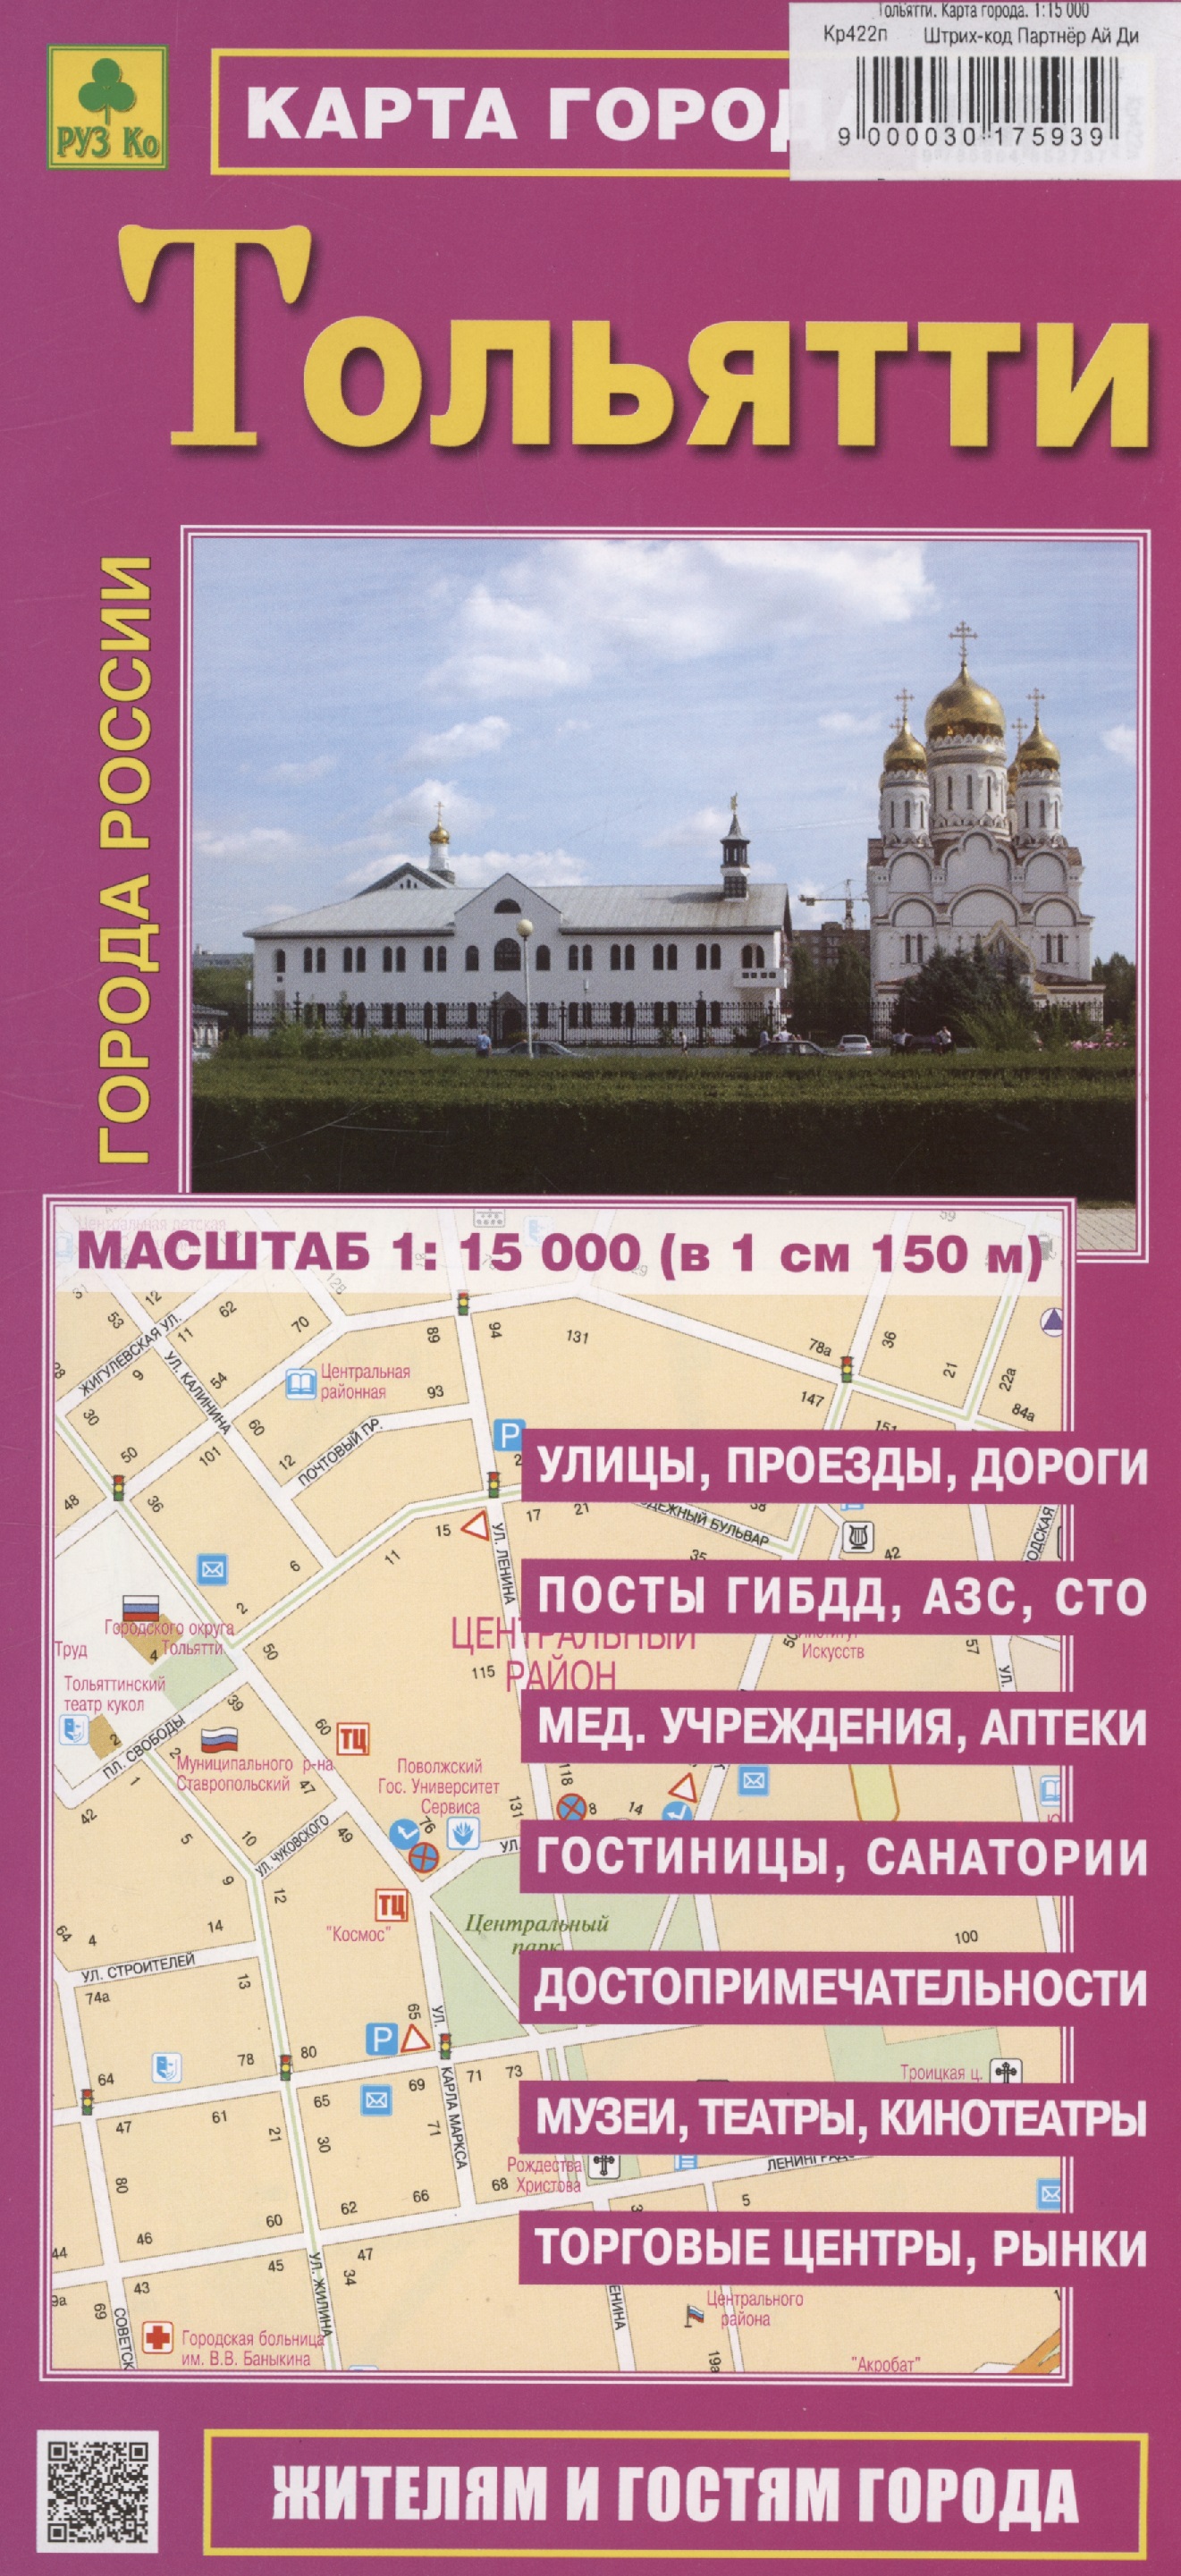 Тольятти. Карта города (М1:15 000) настенная карта города тольятти размер 98 68см